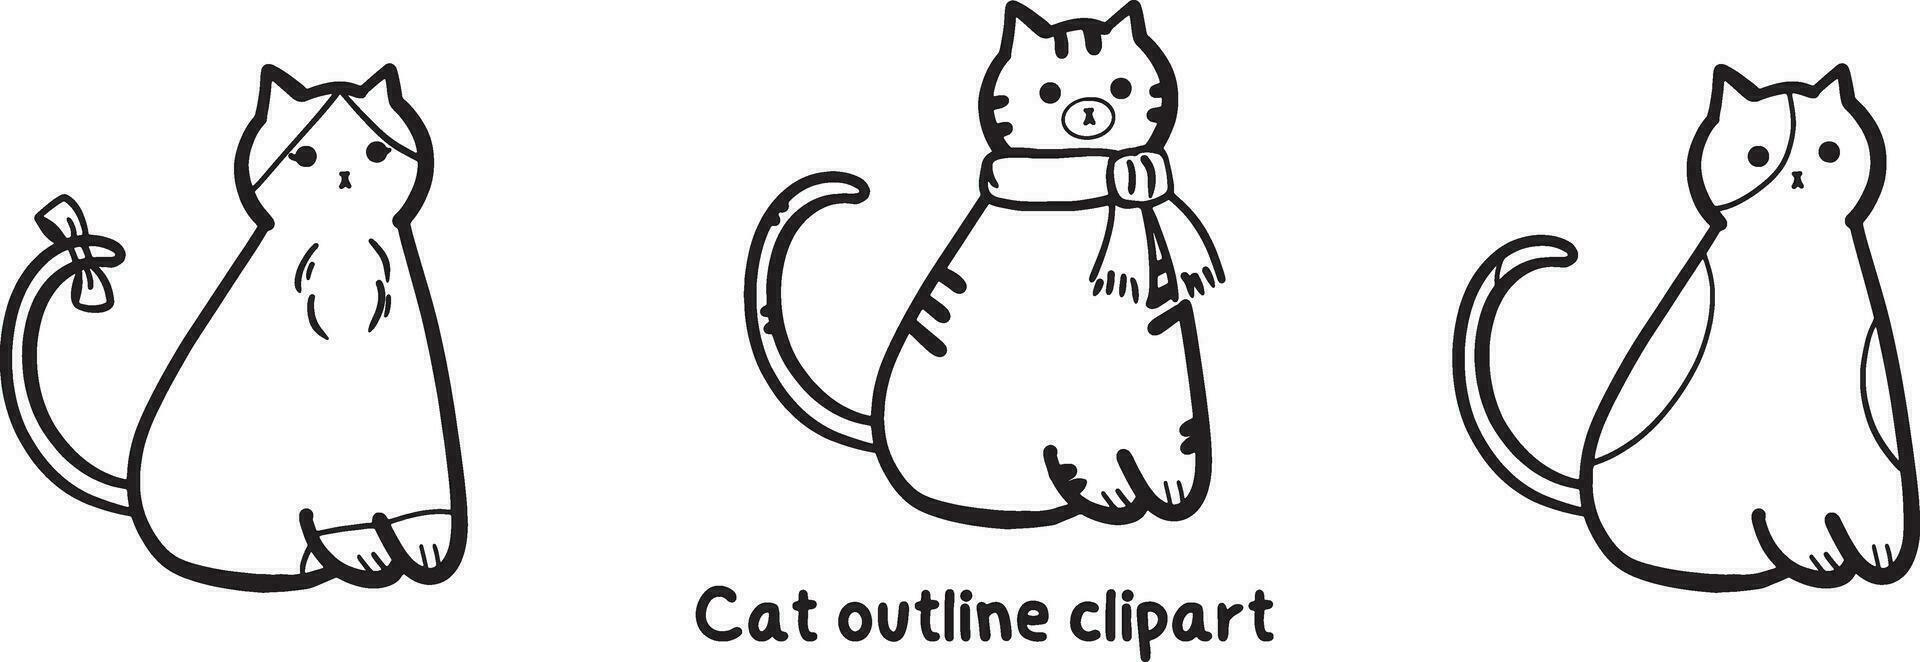 uppsättning av katt översikt ClipArt vektor